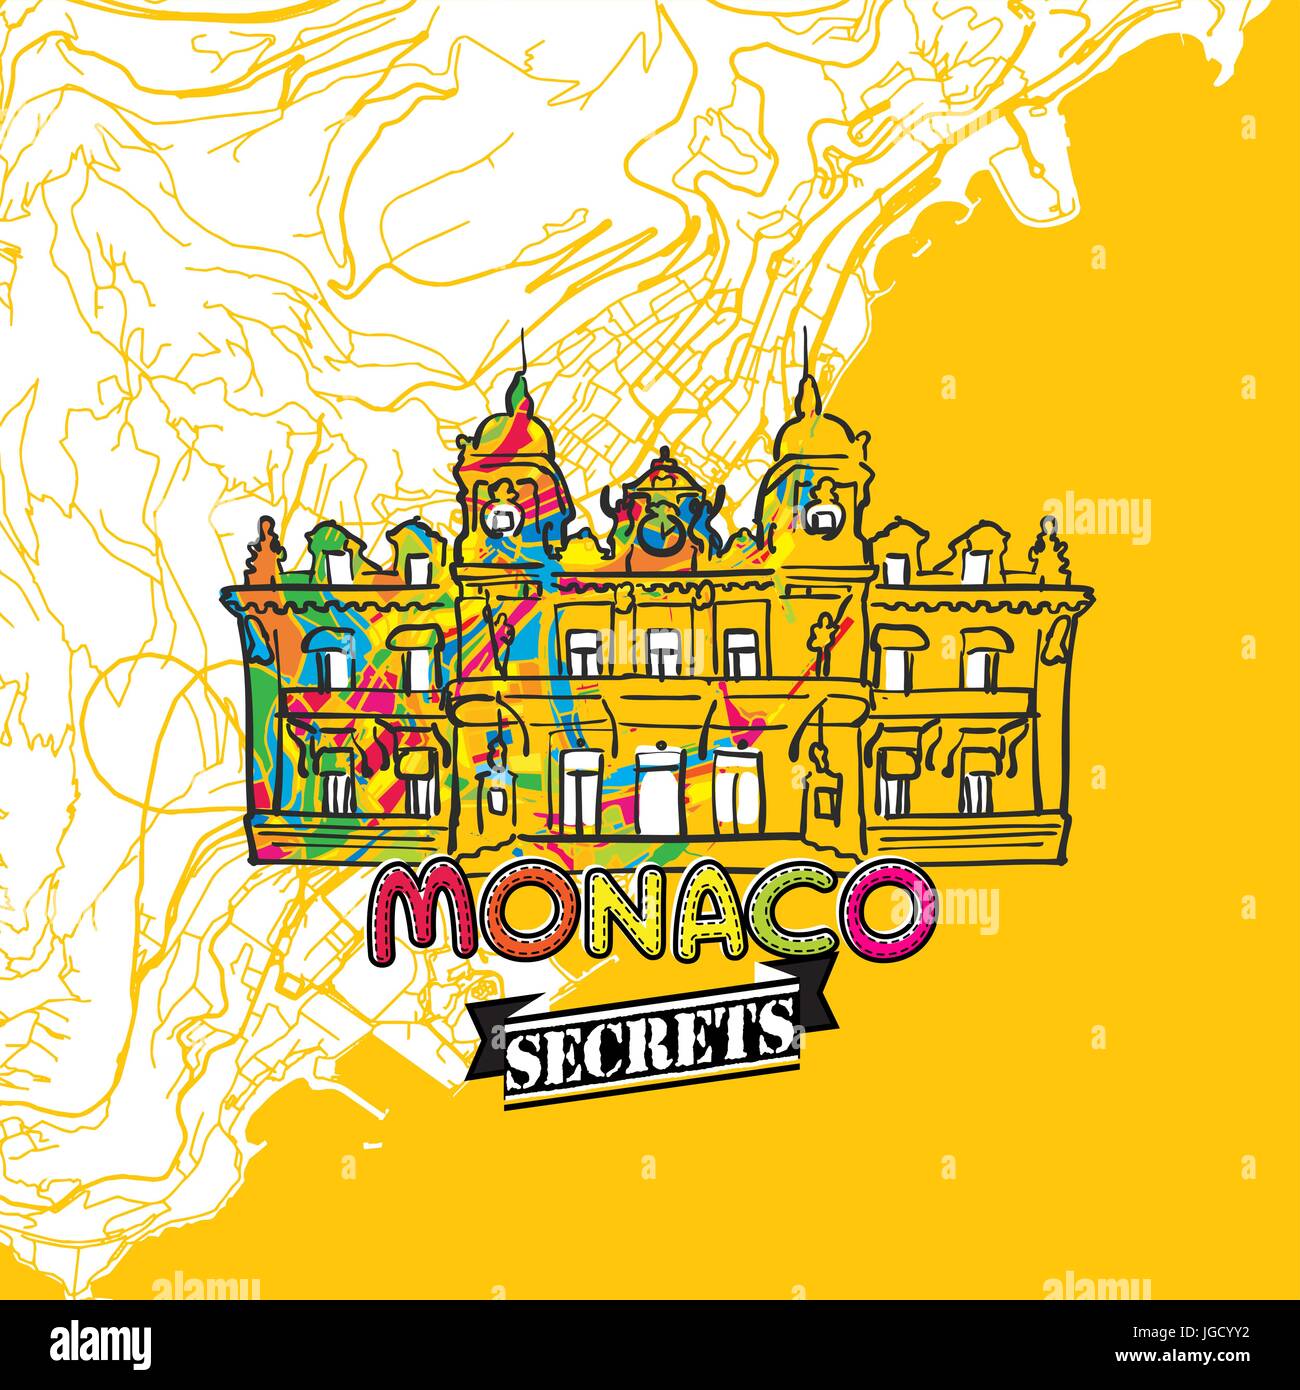 Monaco Reisen Geheimnisse Art Map für die Zuordnung von Experten und Reiseführer. Handgemachte Stadt Logo, Typo-Abzeichen und Hand gezeichnete Vektor-Bild an der Spitze sind gruppiert und Stock Vektor